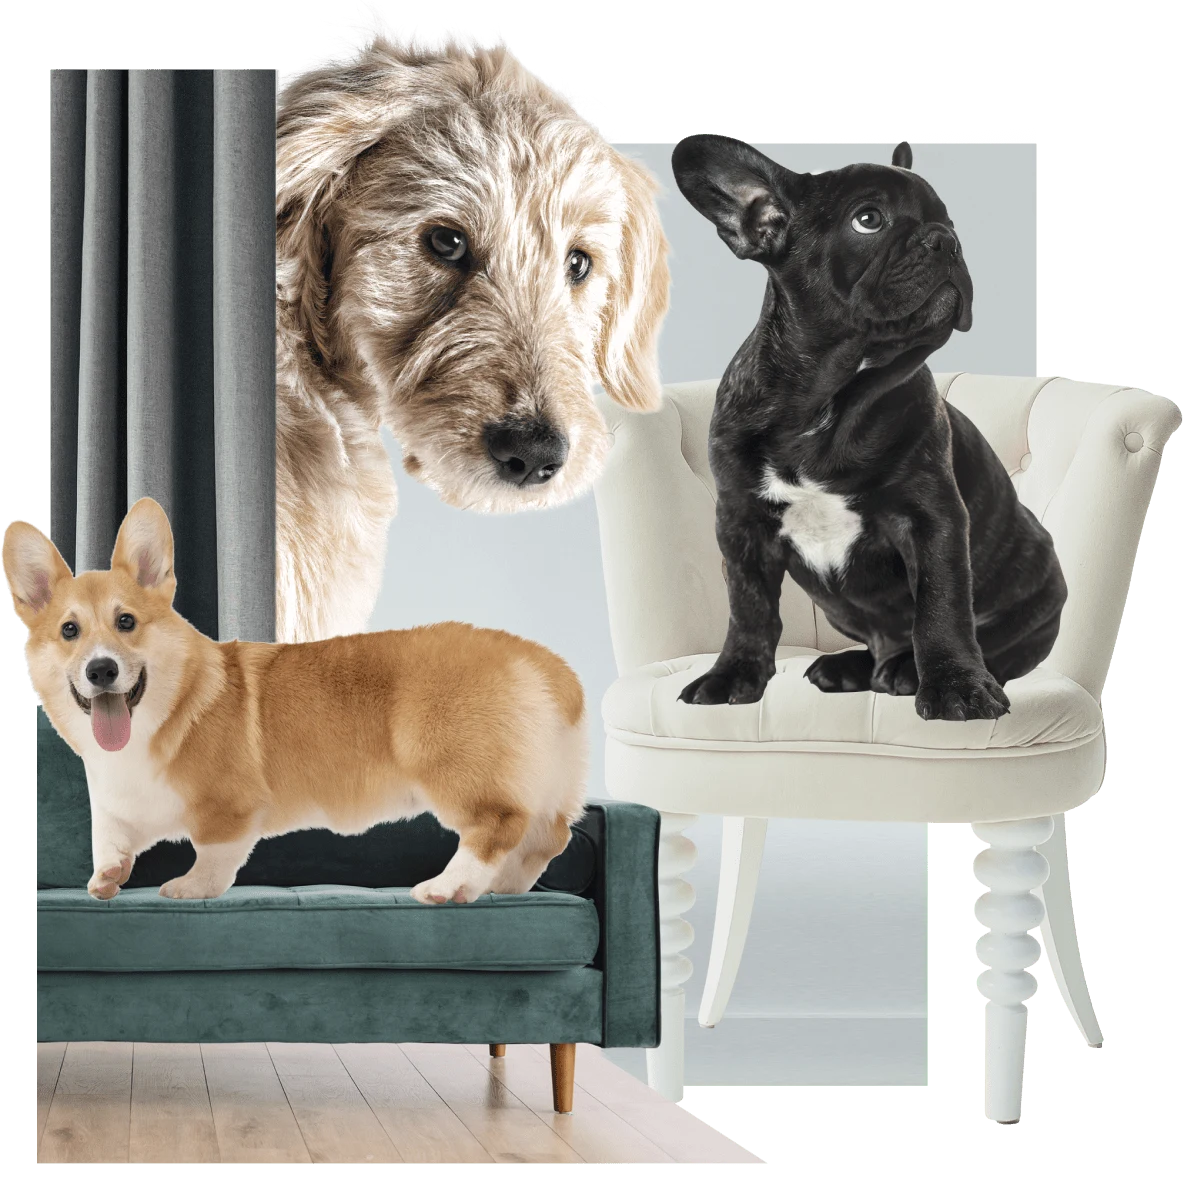 Cão da raça corgi em um sofá verde à esquerda. Buldogue francês em uma cadeira branca à direita. Lébrel irlandês na parte de trás espiando por trás de uma cortina verde.